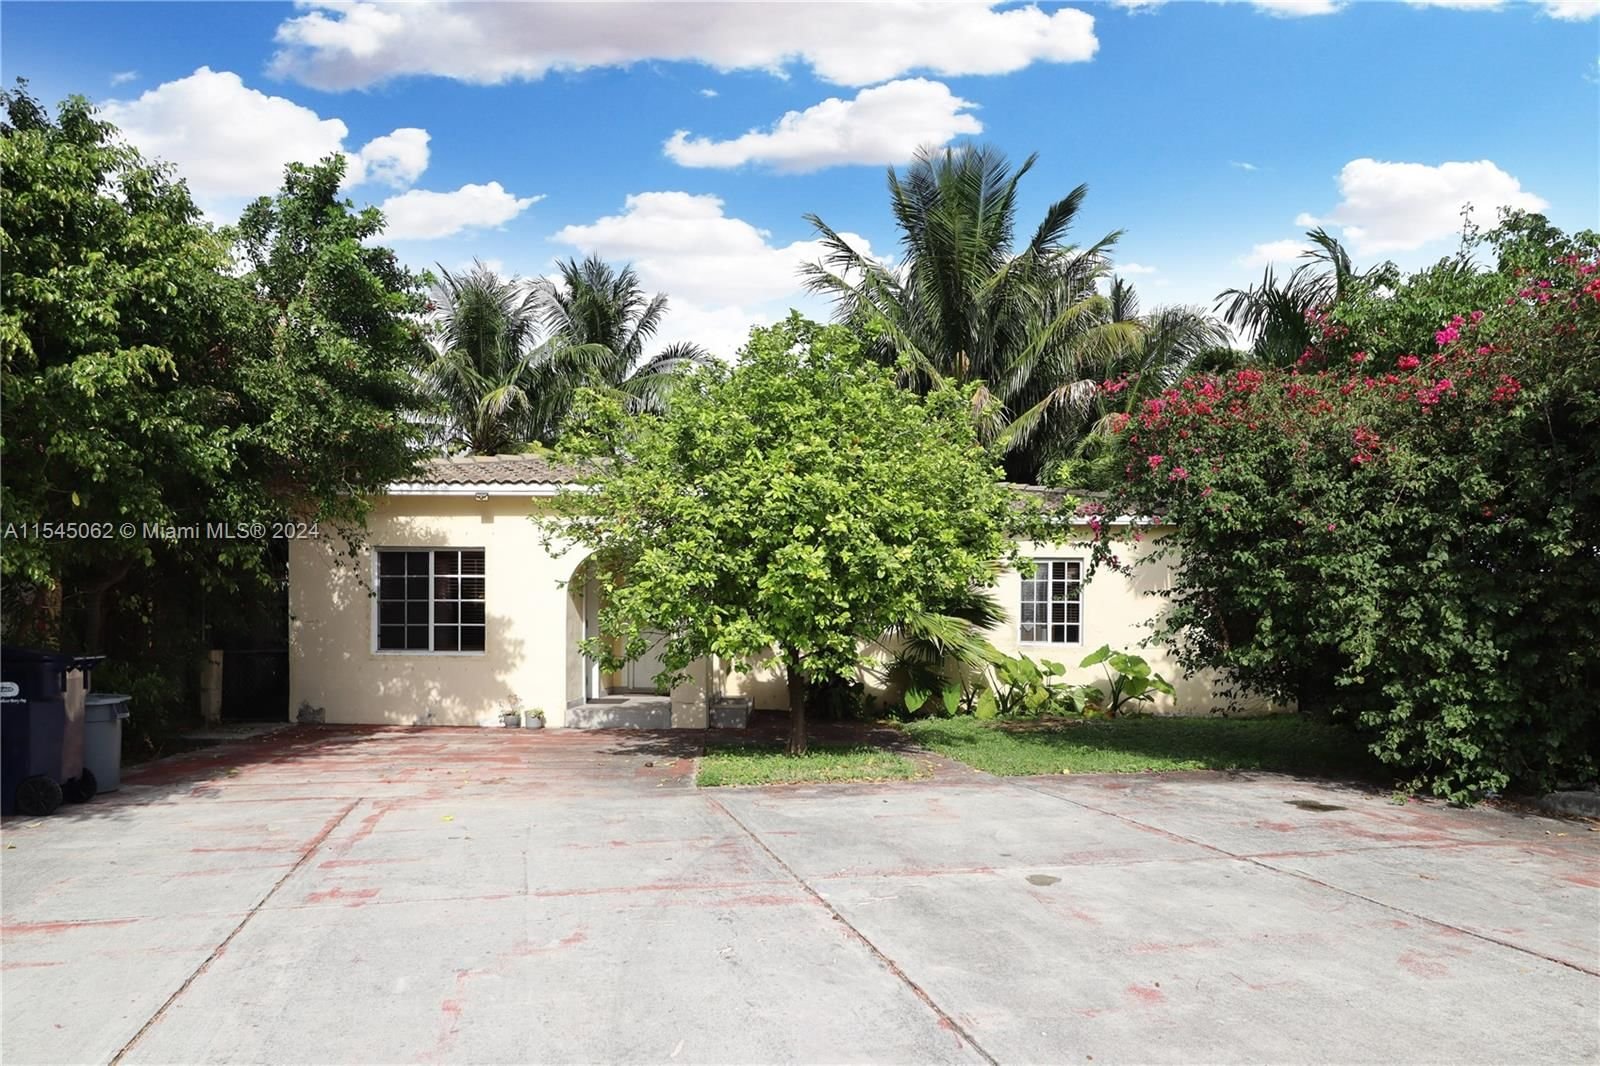 Real estate property located at 2131 Biarritz Dr, Miami-Dade County, ISLE OF NORMANDY MIAMI VI, Miami Beach, FL